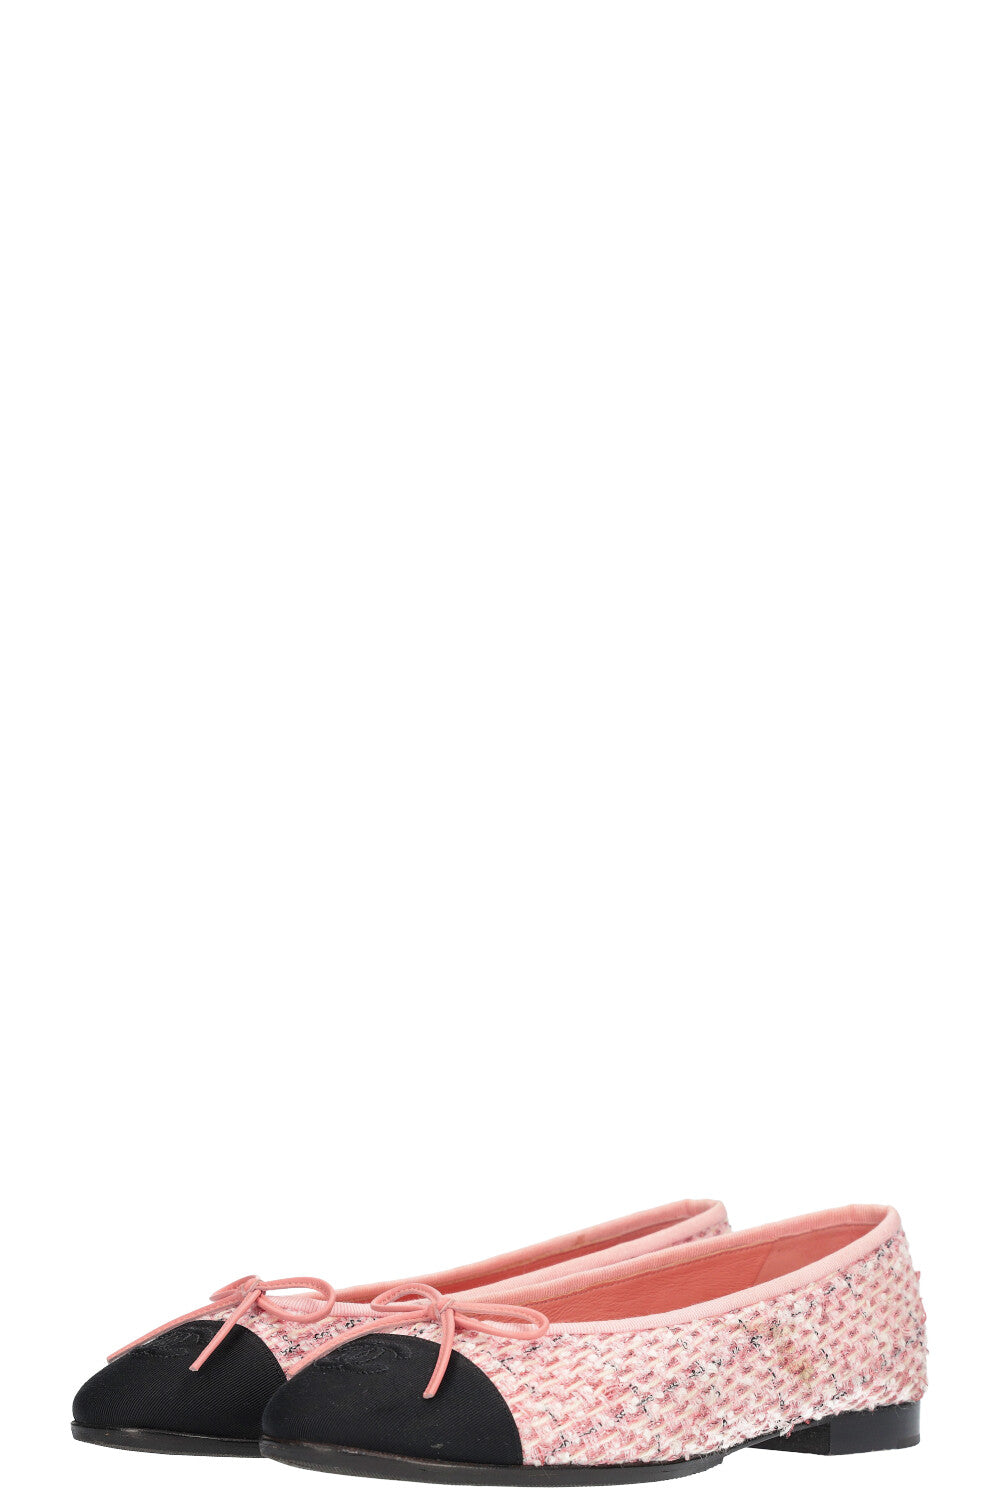 CHANEL Flats Tweed Pink